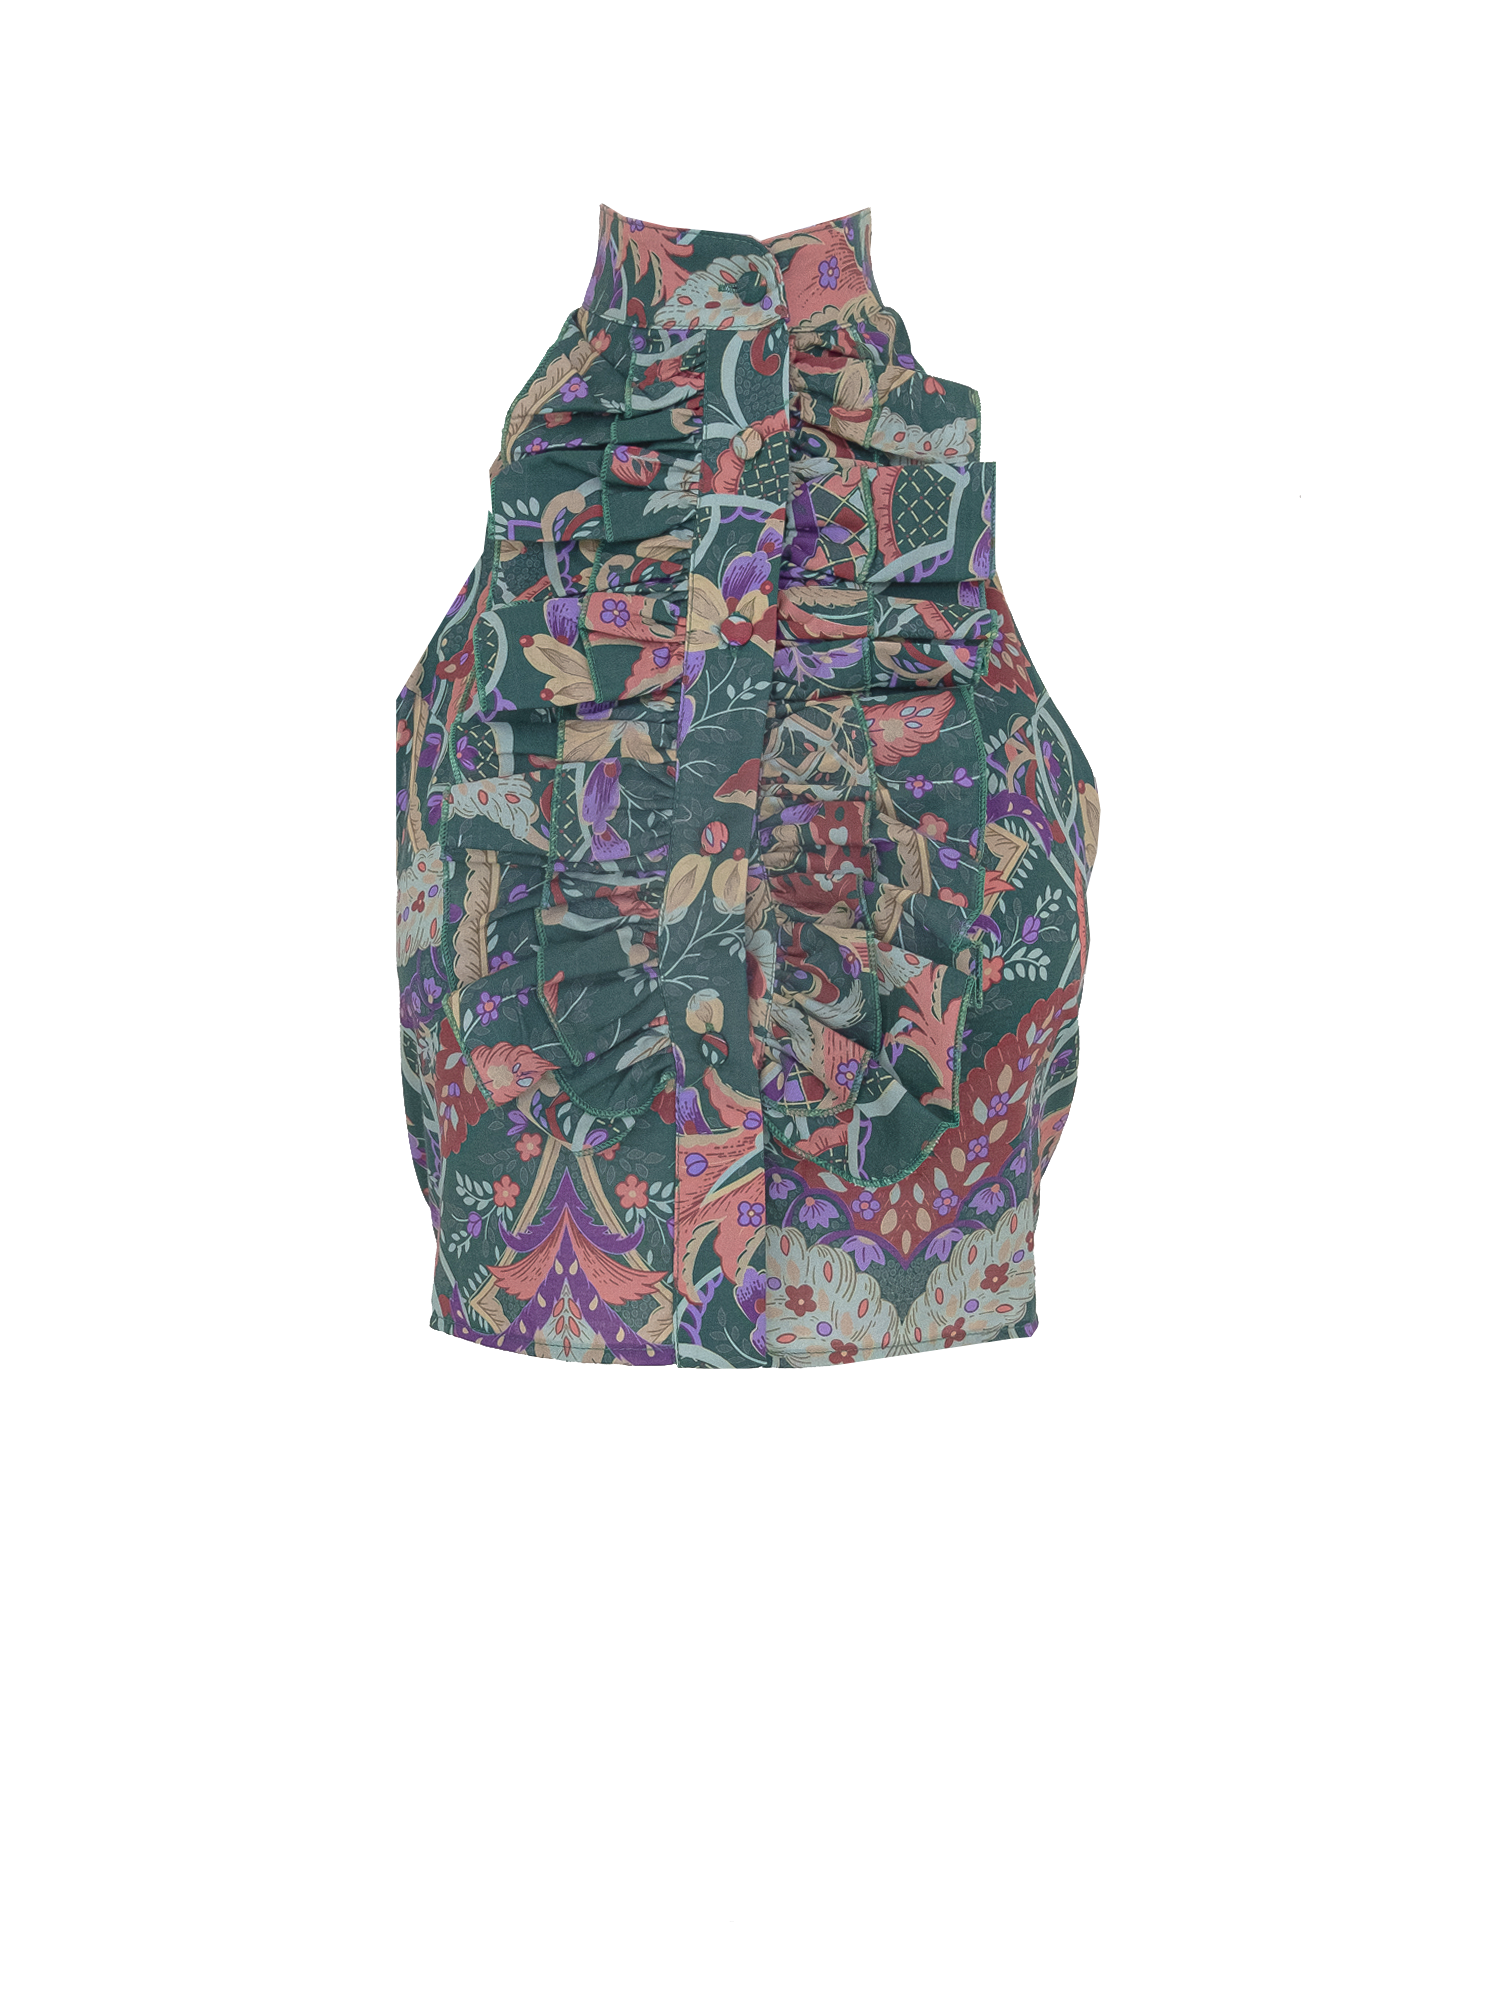 ORCHIDEA - Pergola patterned cotton top